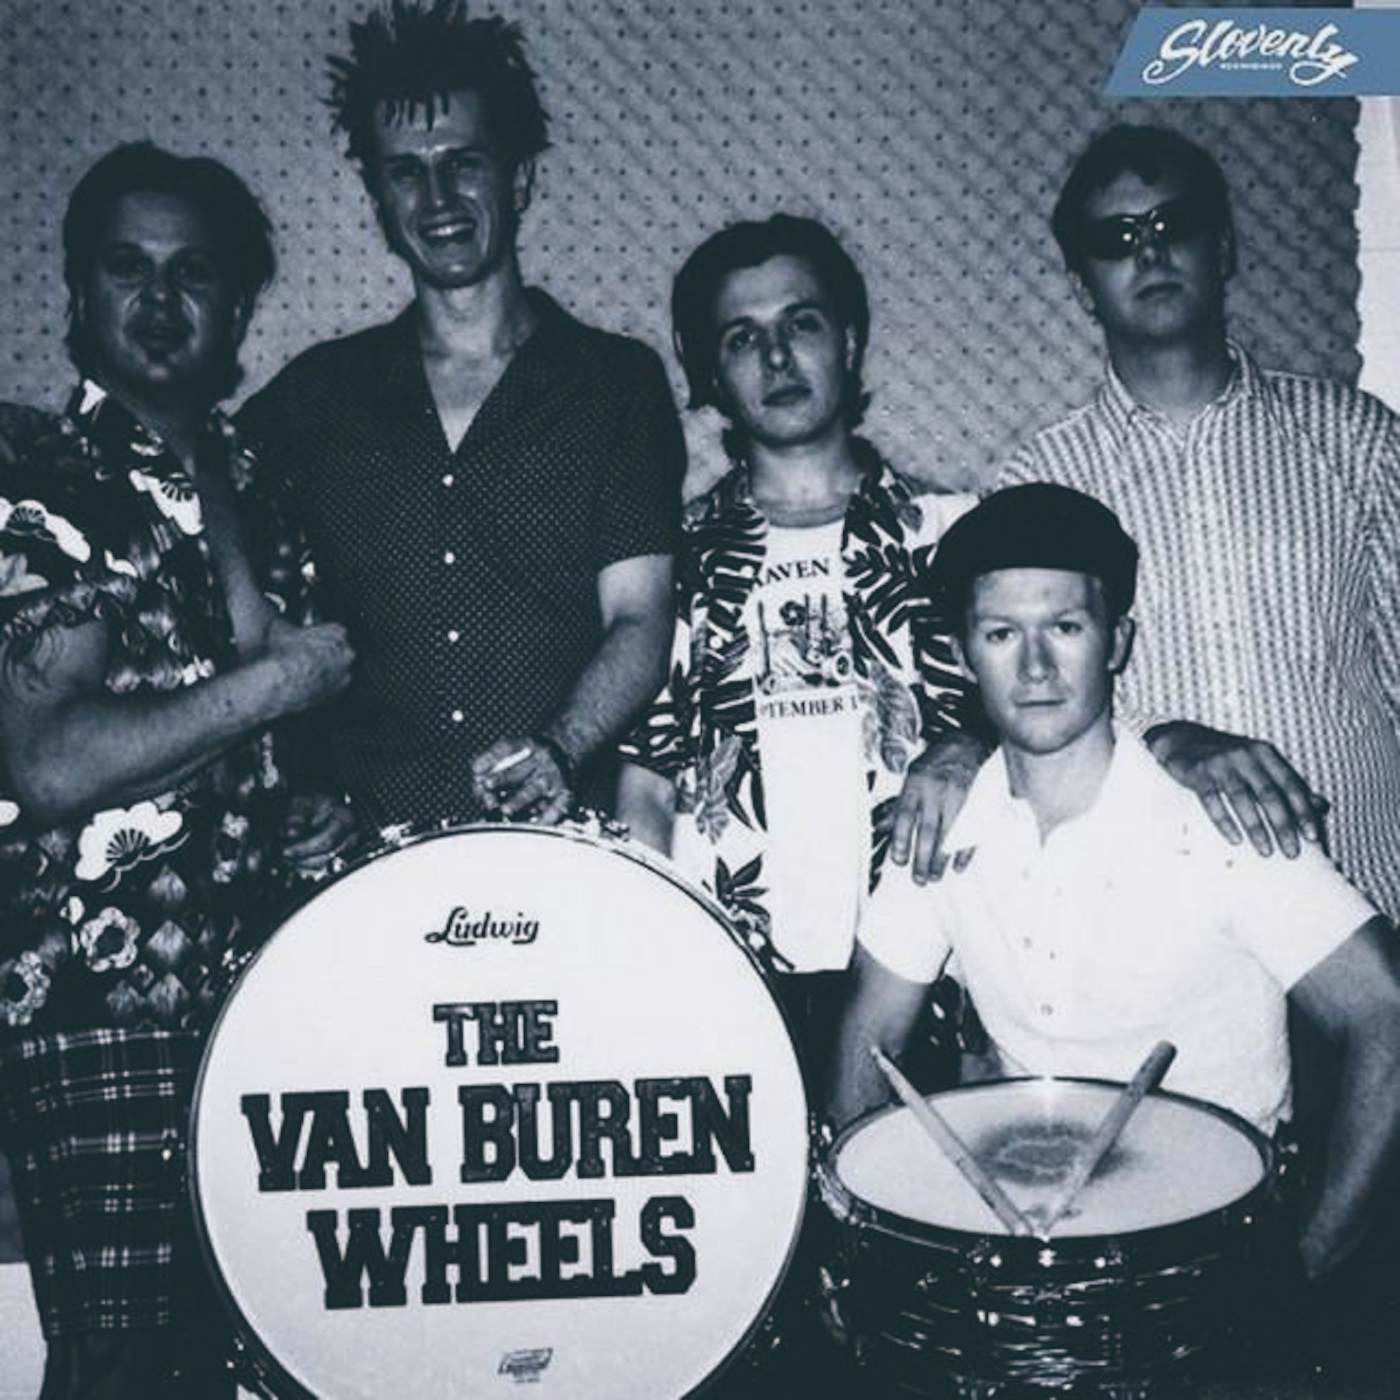 Van Buren Wheels